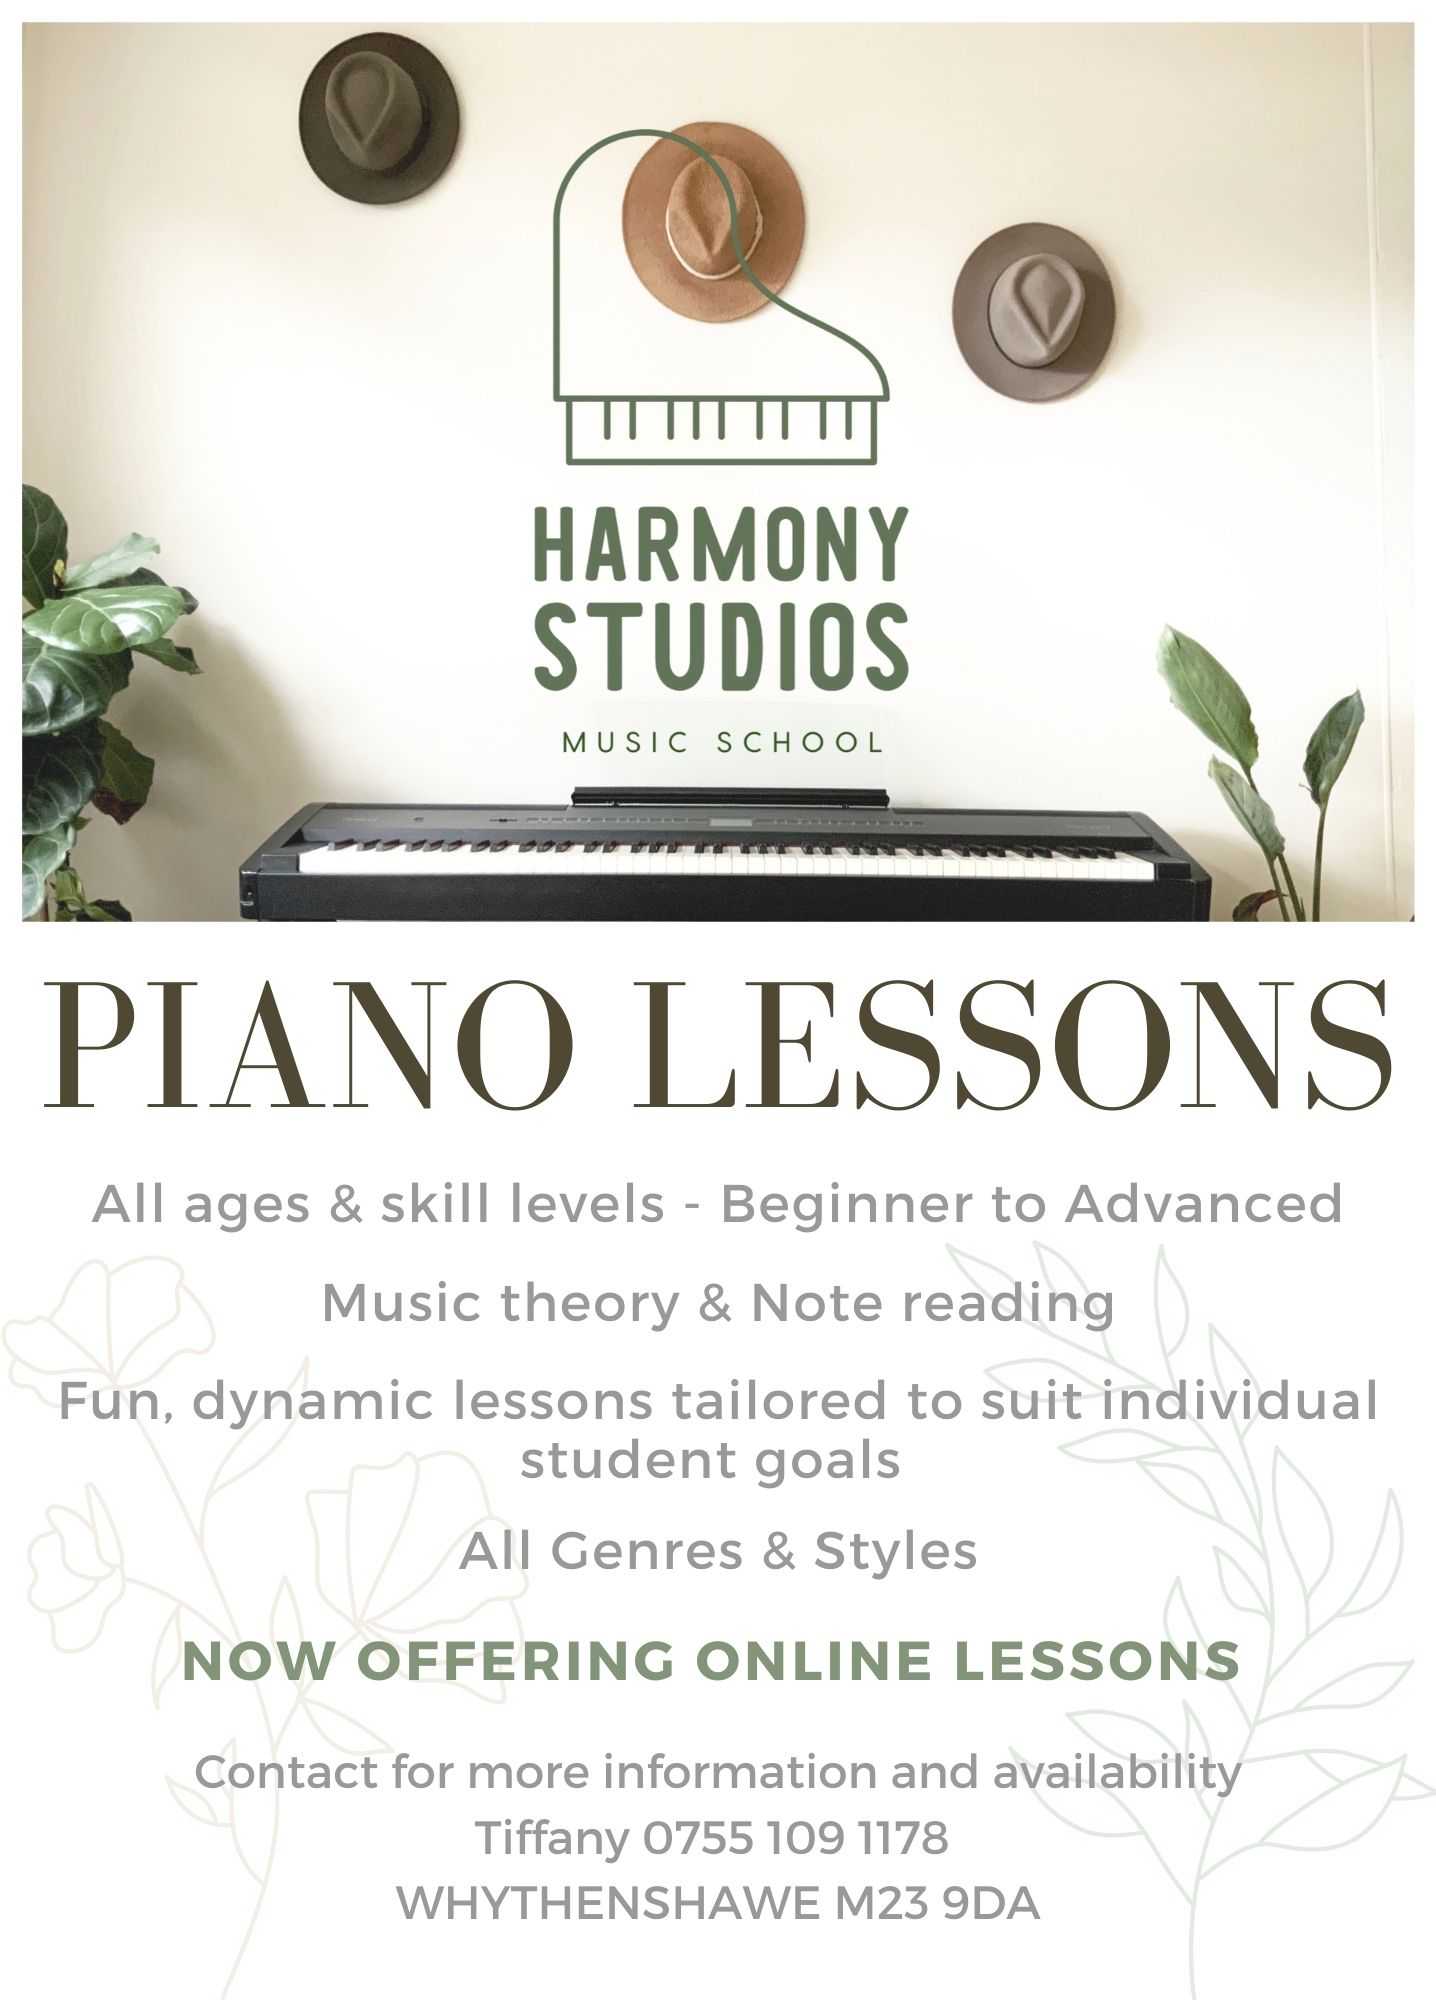 Harmony Studios Music School